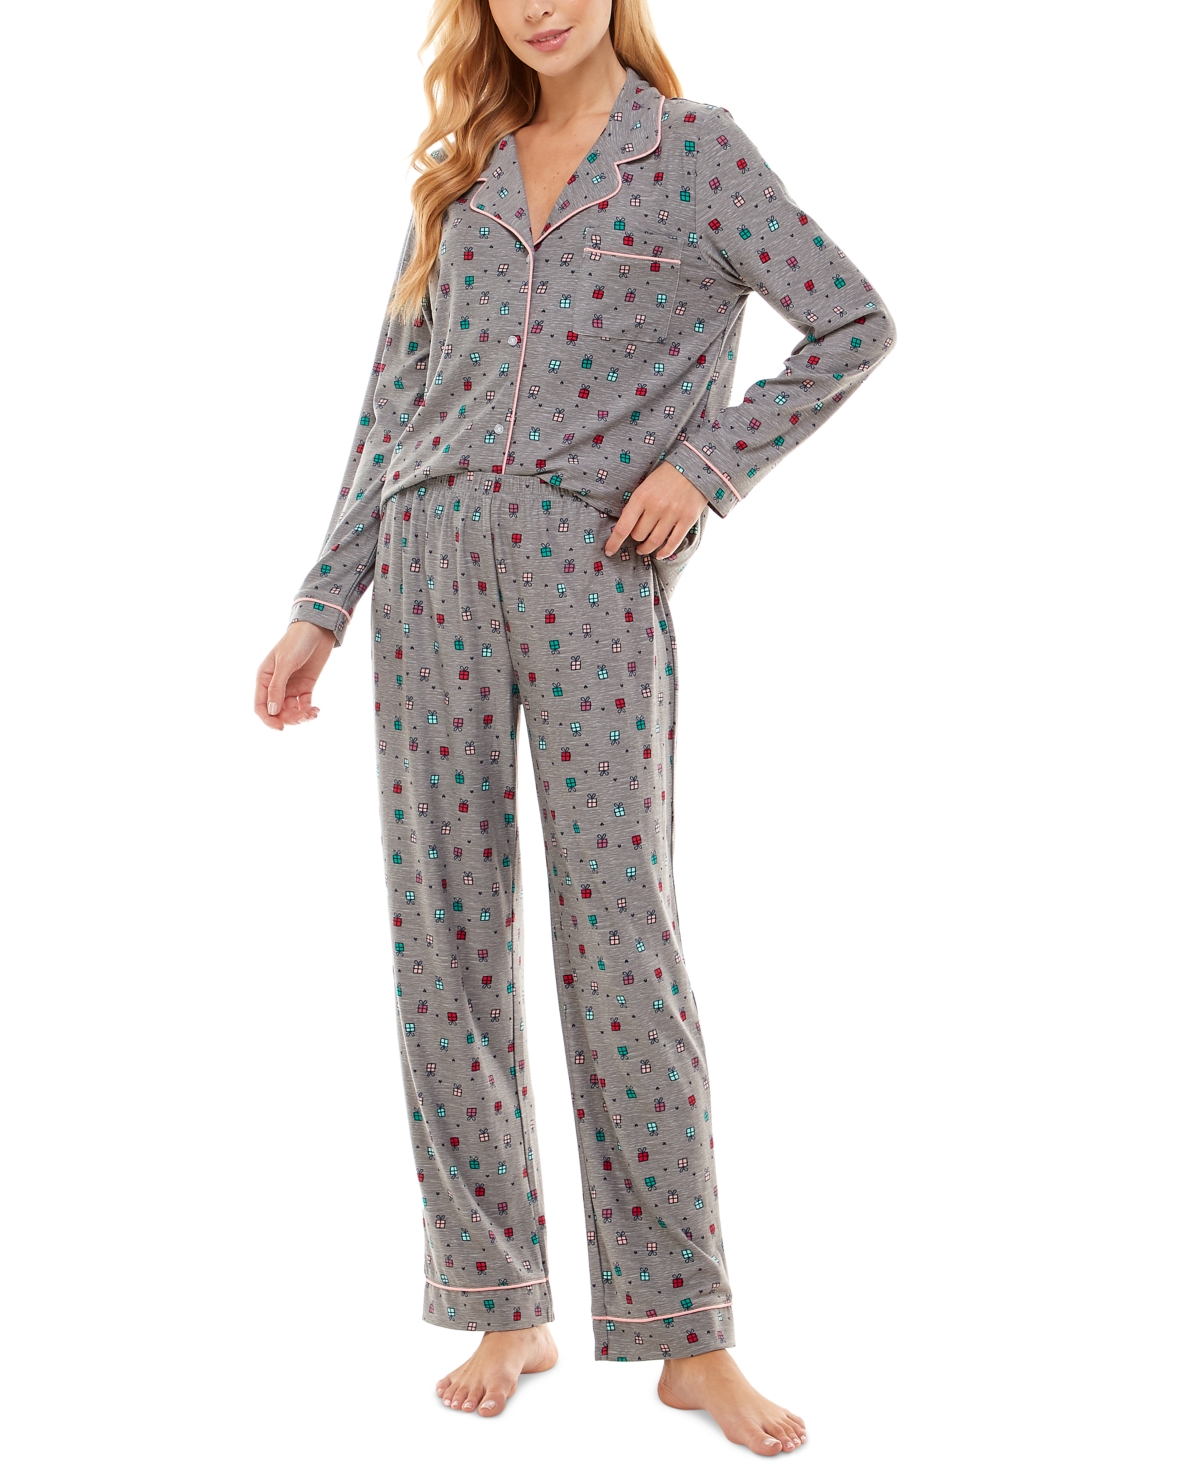 Jaclyn Intimates Printed Notch-Collar Top & Pants Pajama Set | Shop ...